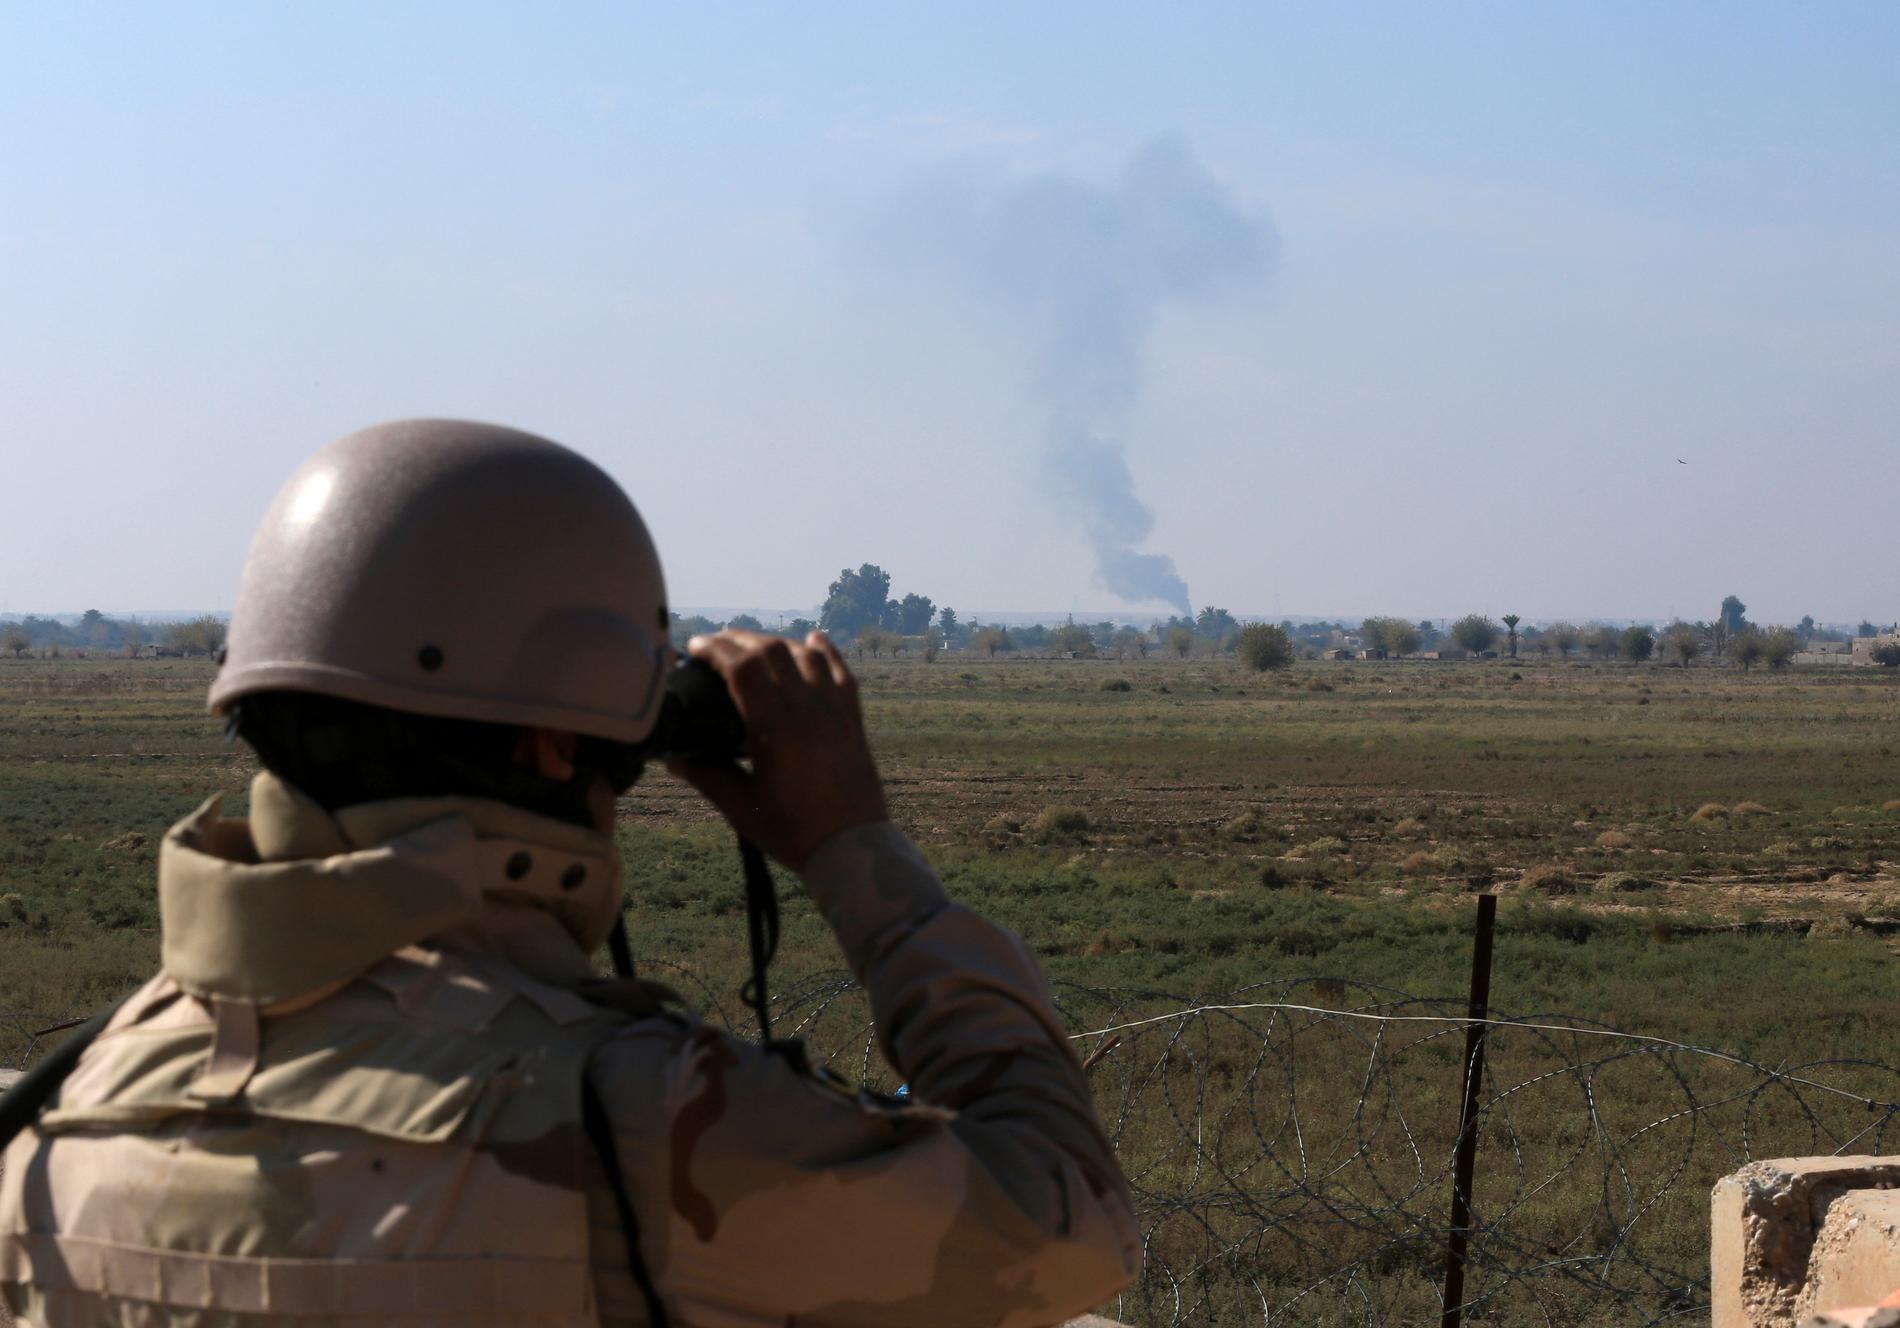 En irakisk soldat riktar kikaren mot en rökpelare efter ett flyganfall mot Islamiska staten (IS), vid gränsen mot Syrien. Arkivbild.